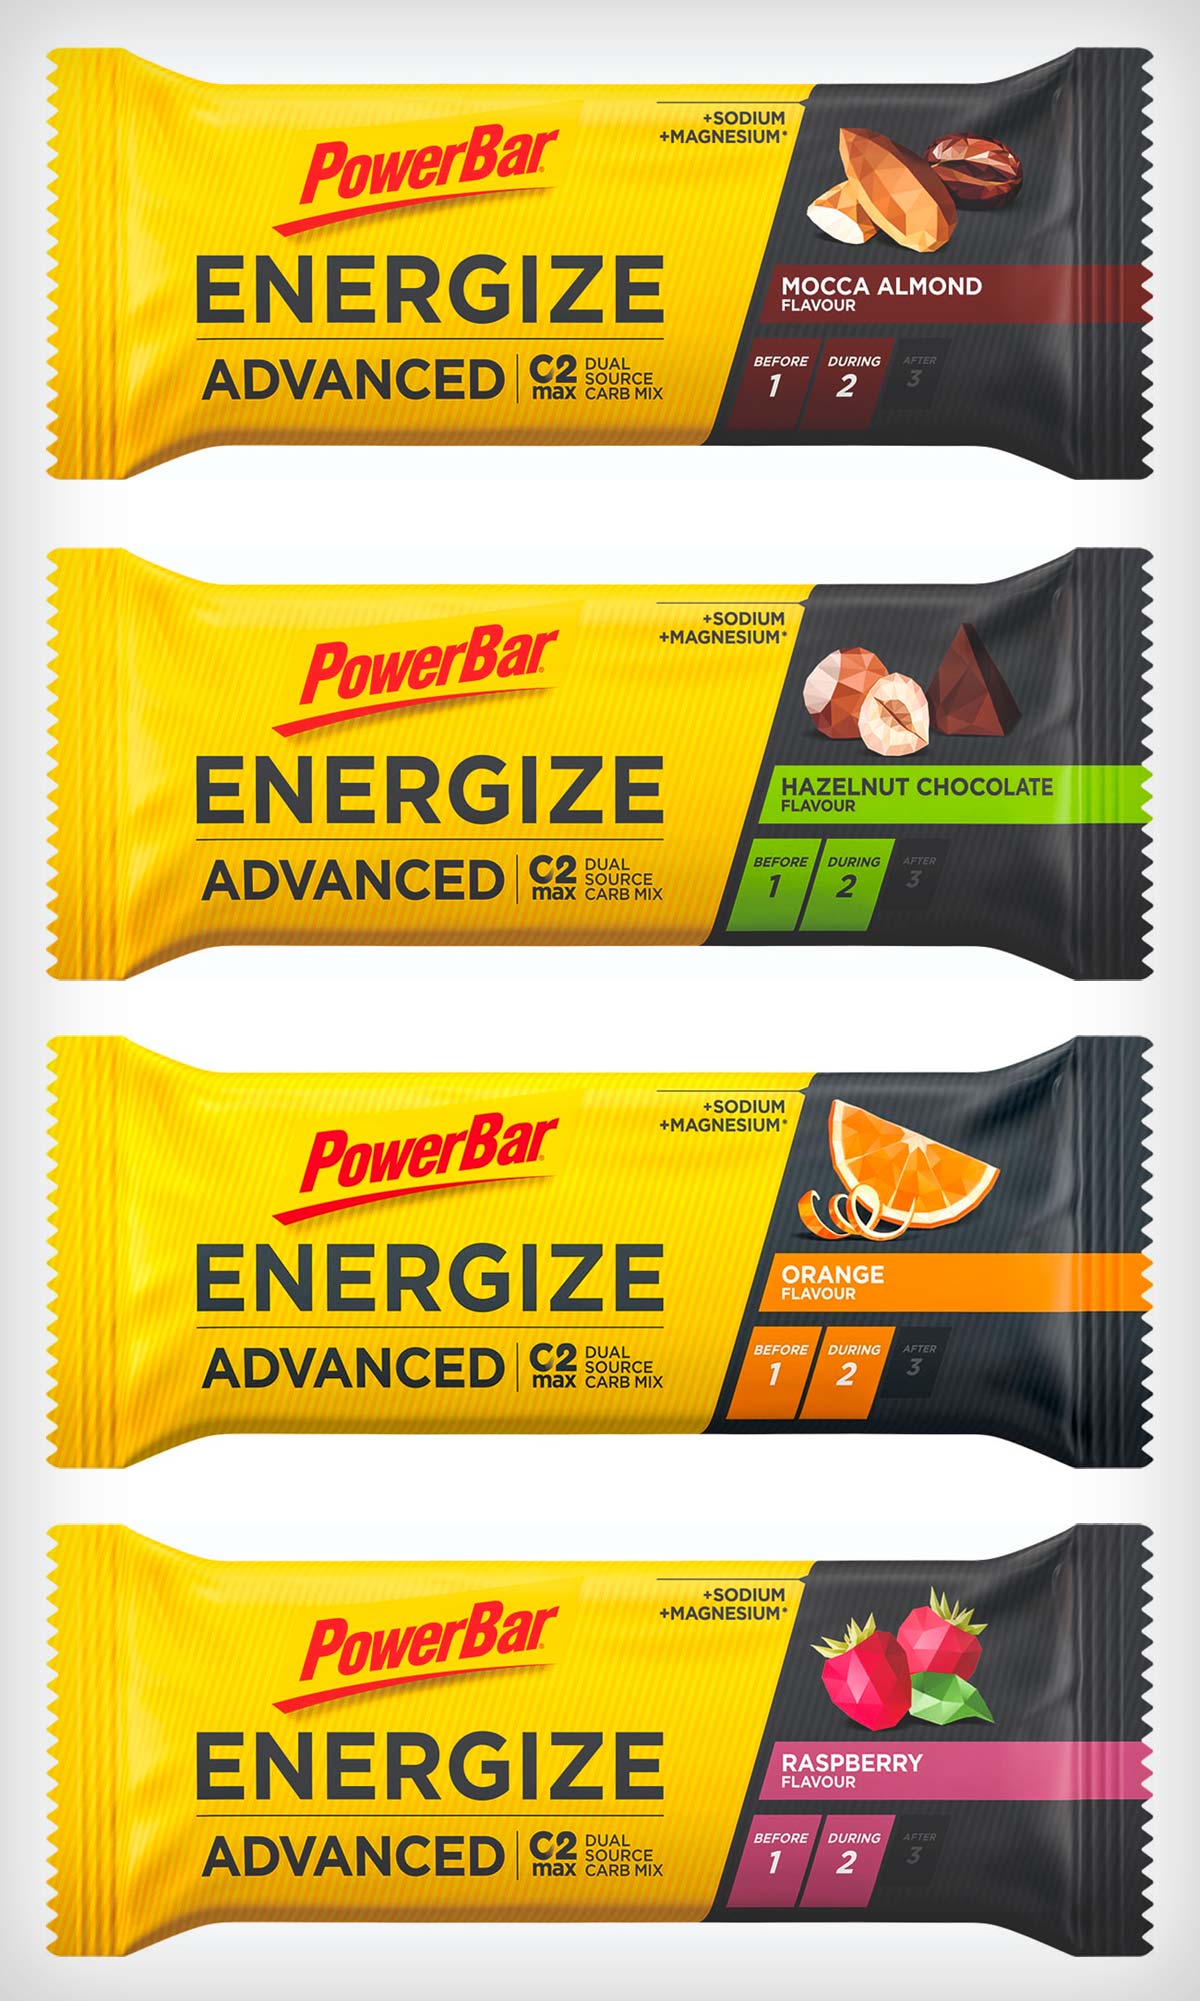 En TodoMountainBike: PowerBar Energize Advanced, la barrita energética original renueva su fórmula con mejor sabor y textura